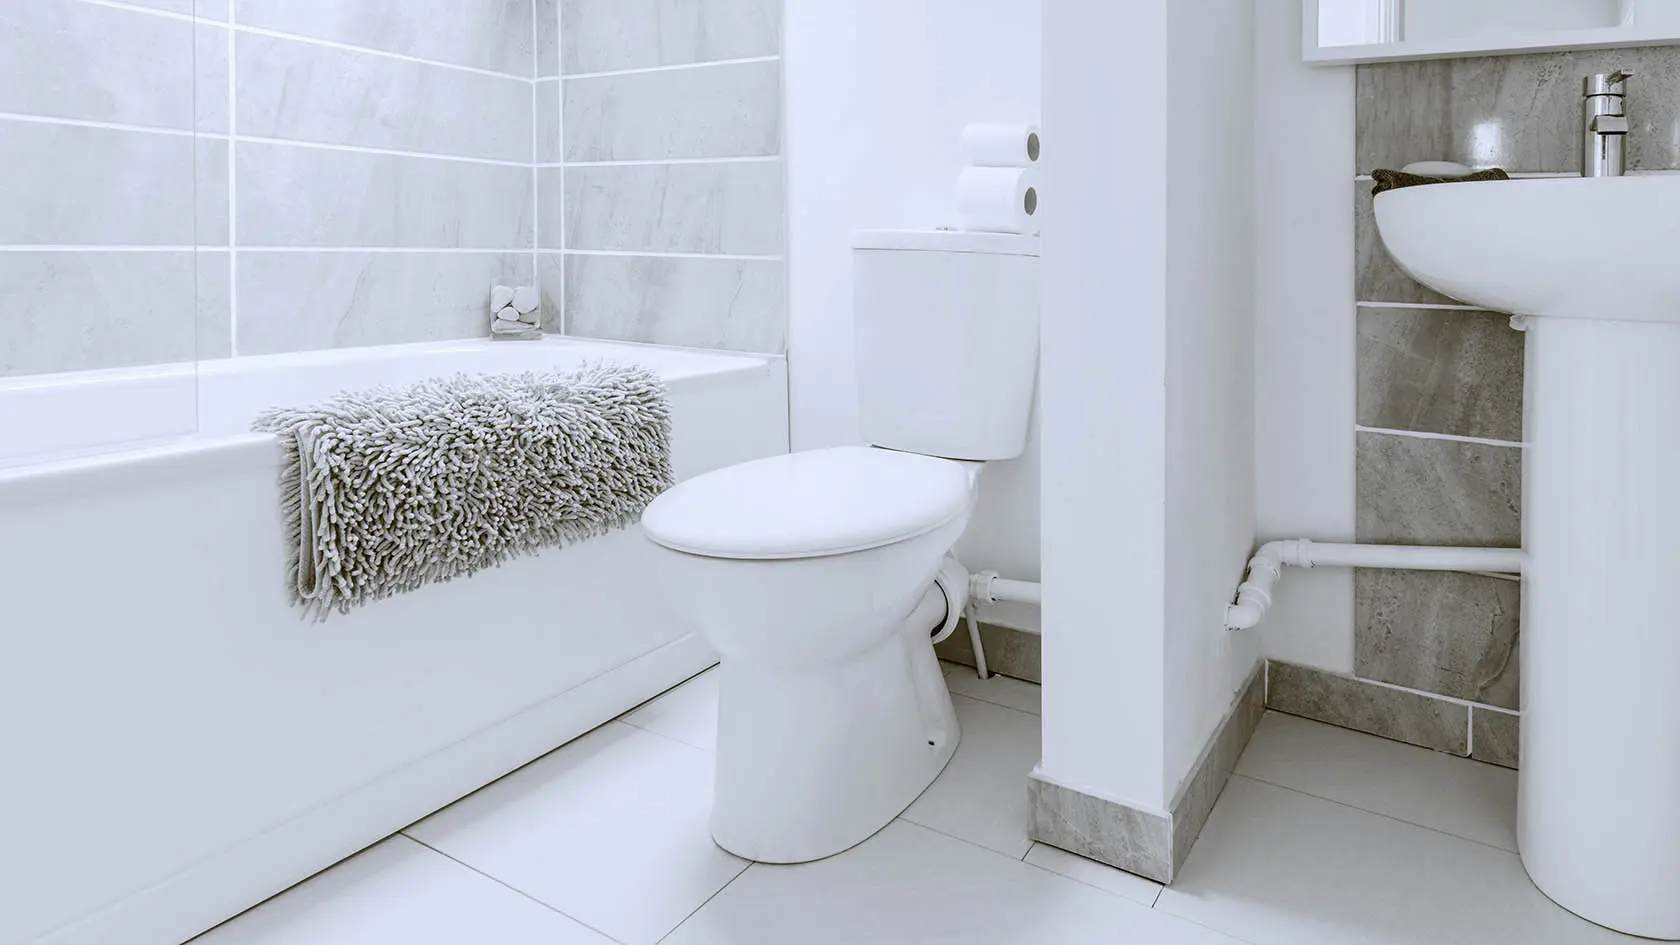 Bath Shower Resurfacing Repairs, Bathtub Refinishing Wichita Ks